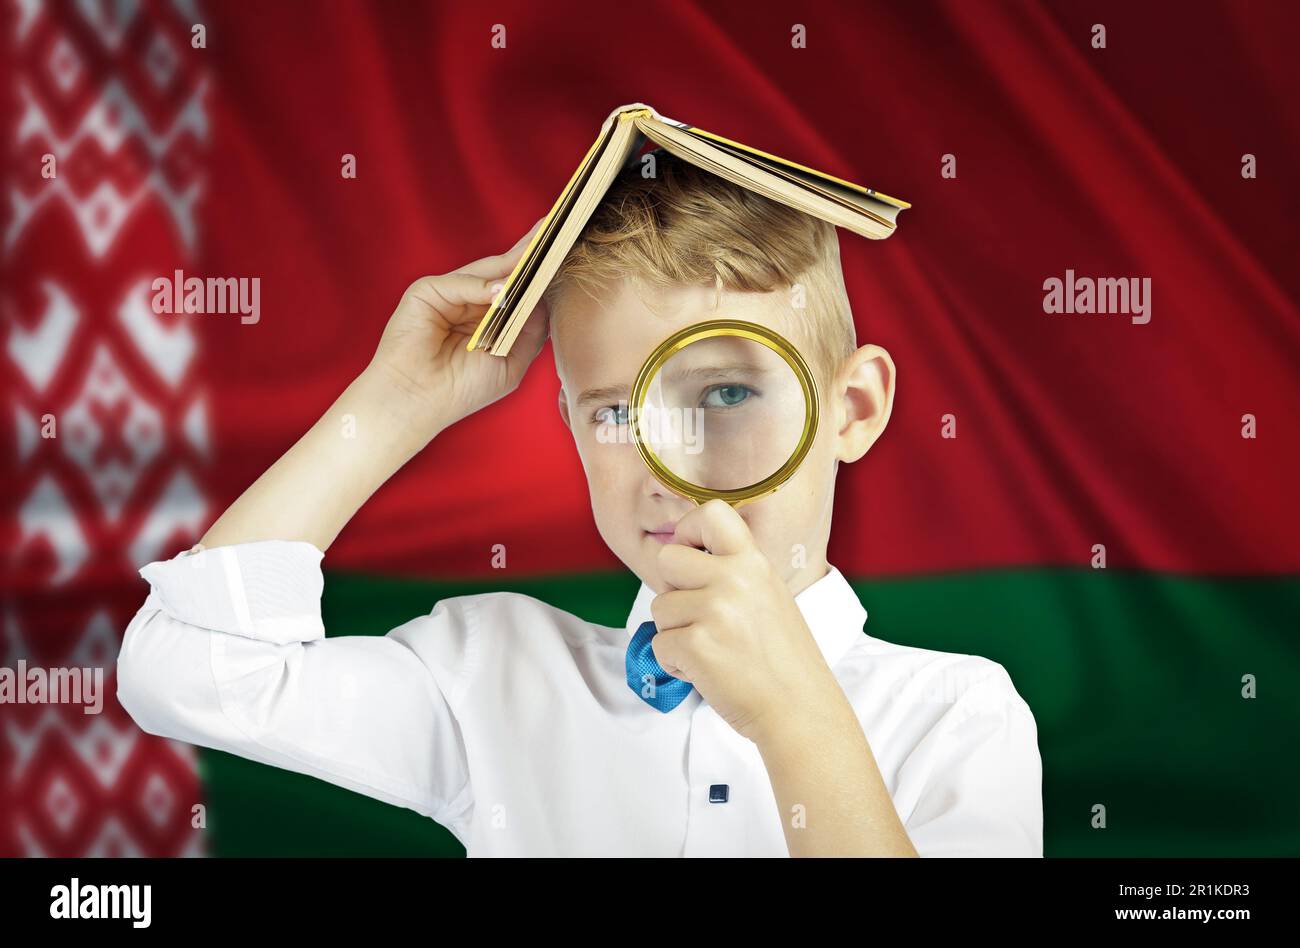 Un garçon avec un livre sur sa tête regarde à travers une loupe sur le fond du drapeau biélorusse. Concept d'éducation. Banque D'Images